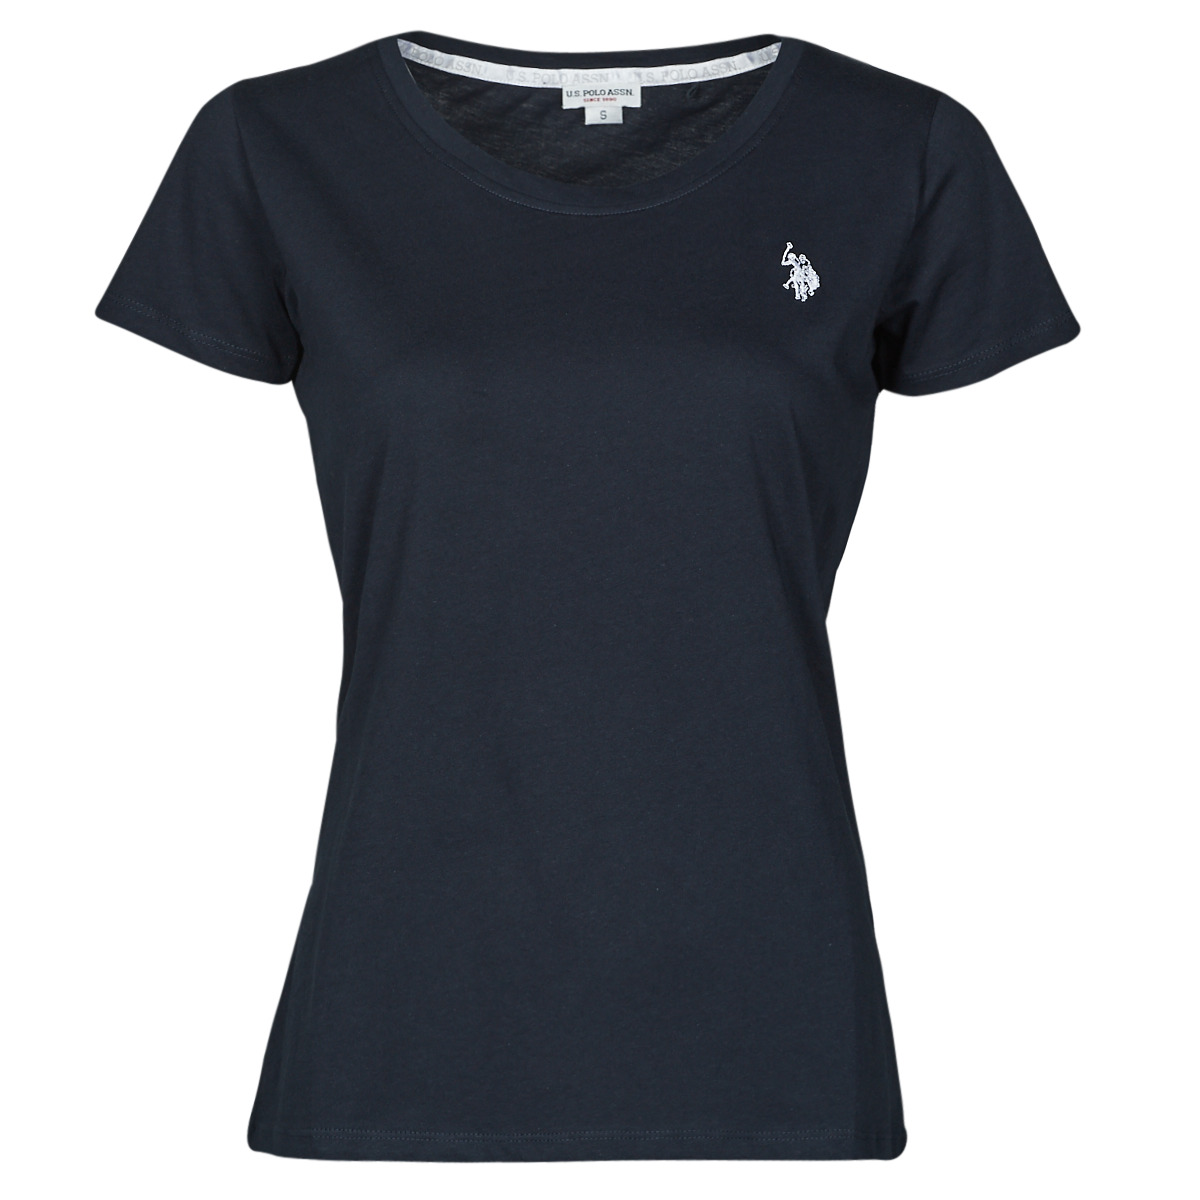 T-shirt με κοντά μανίκια U.S Polo Assn. CRY 51520 EH03